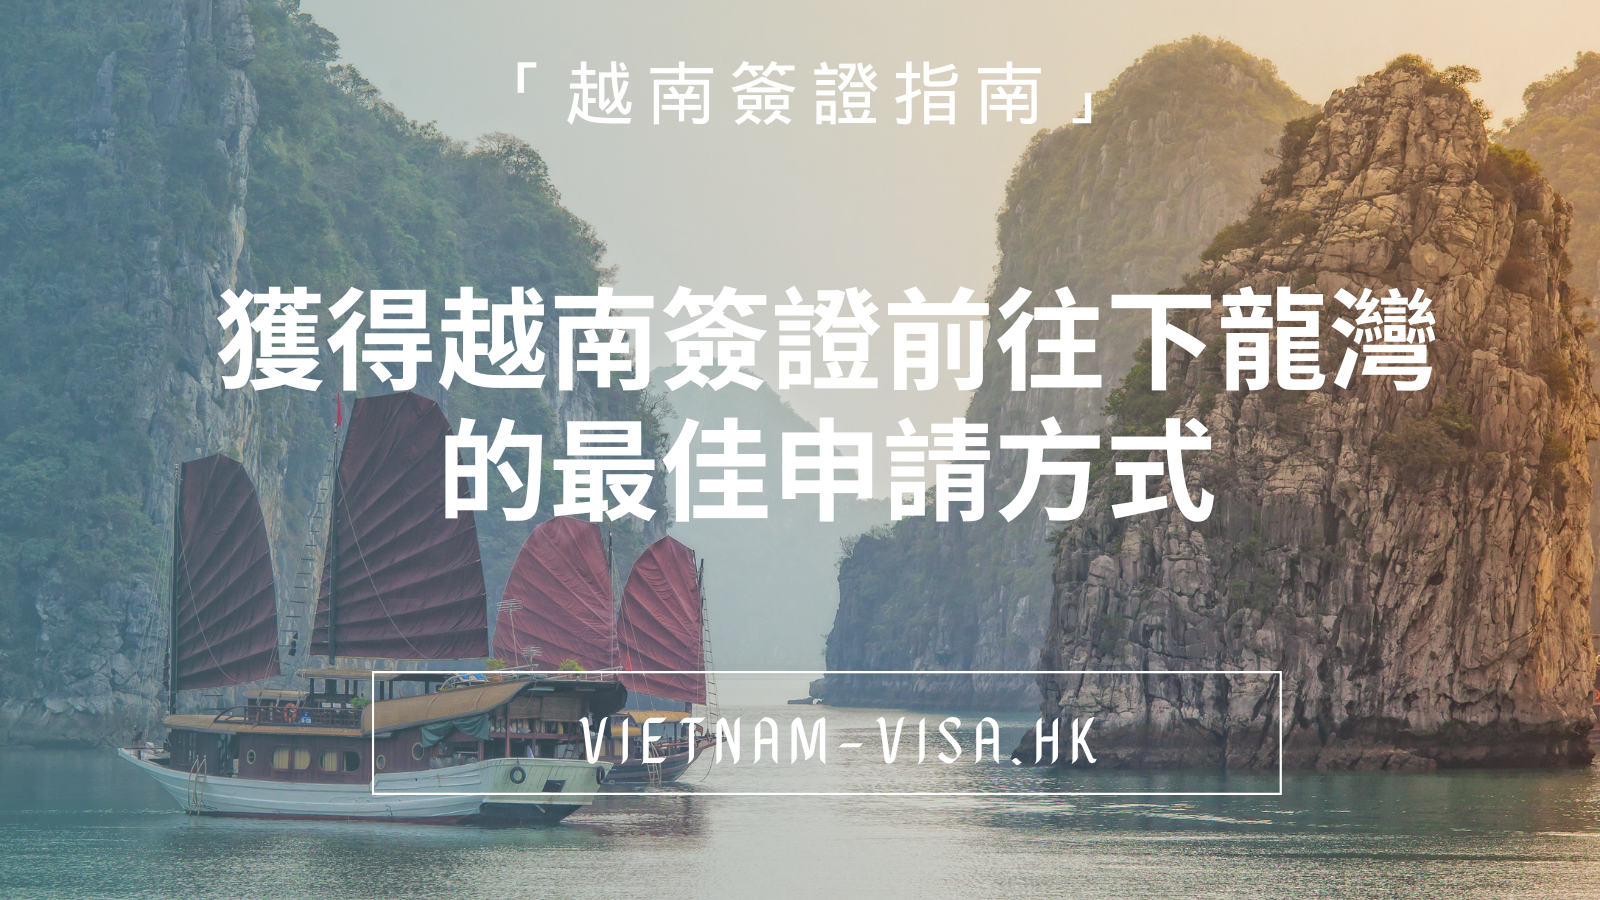 「越南簽證指南」獲得越南簽證前往下龍灣的最佳申請方式